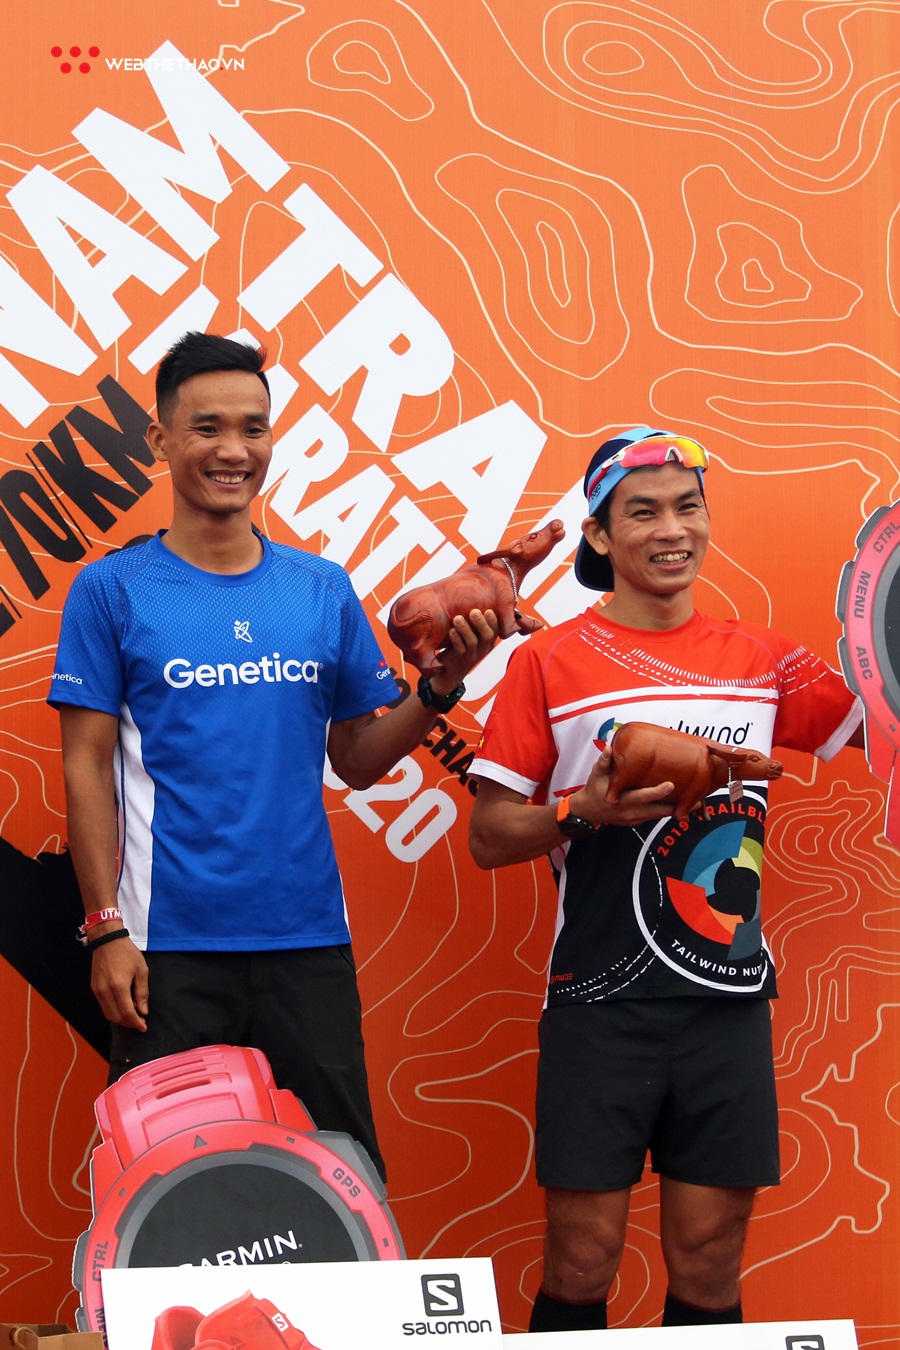 Những nụ cười làm rung rinh trái tim tại Vietnam Trail Marathon 2020